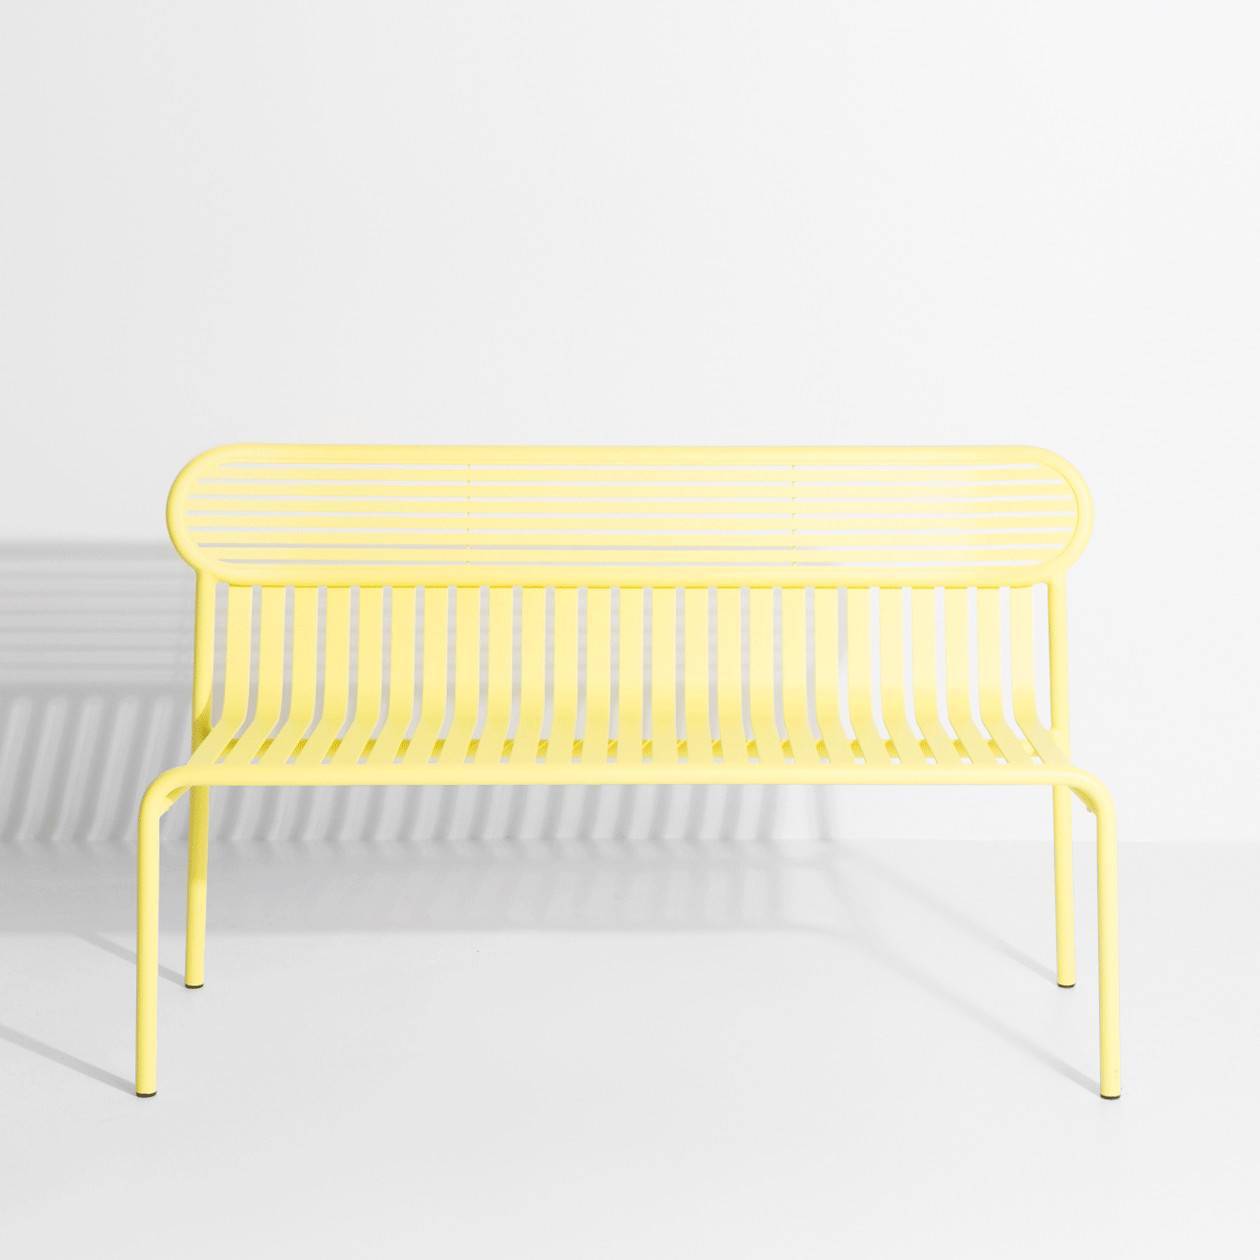 Yellow metal garden bench - Petite Friture